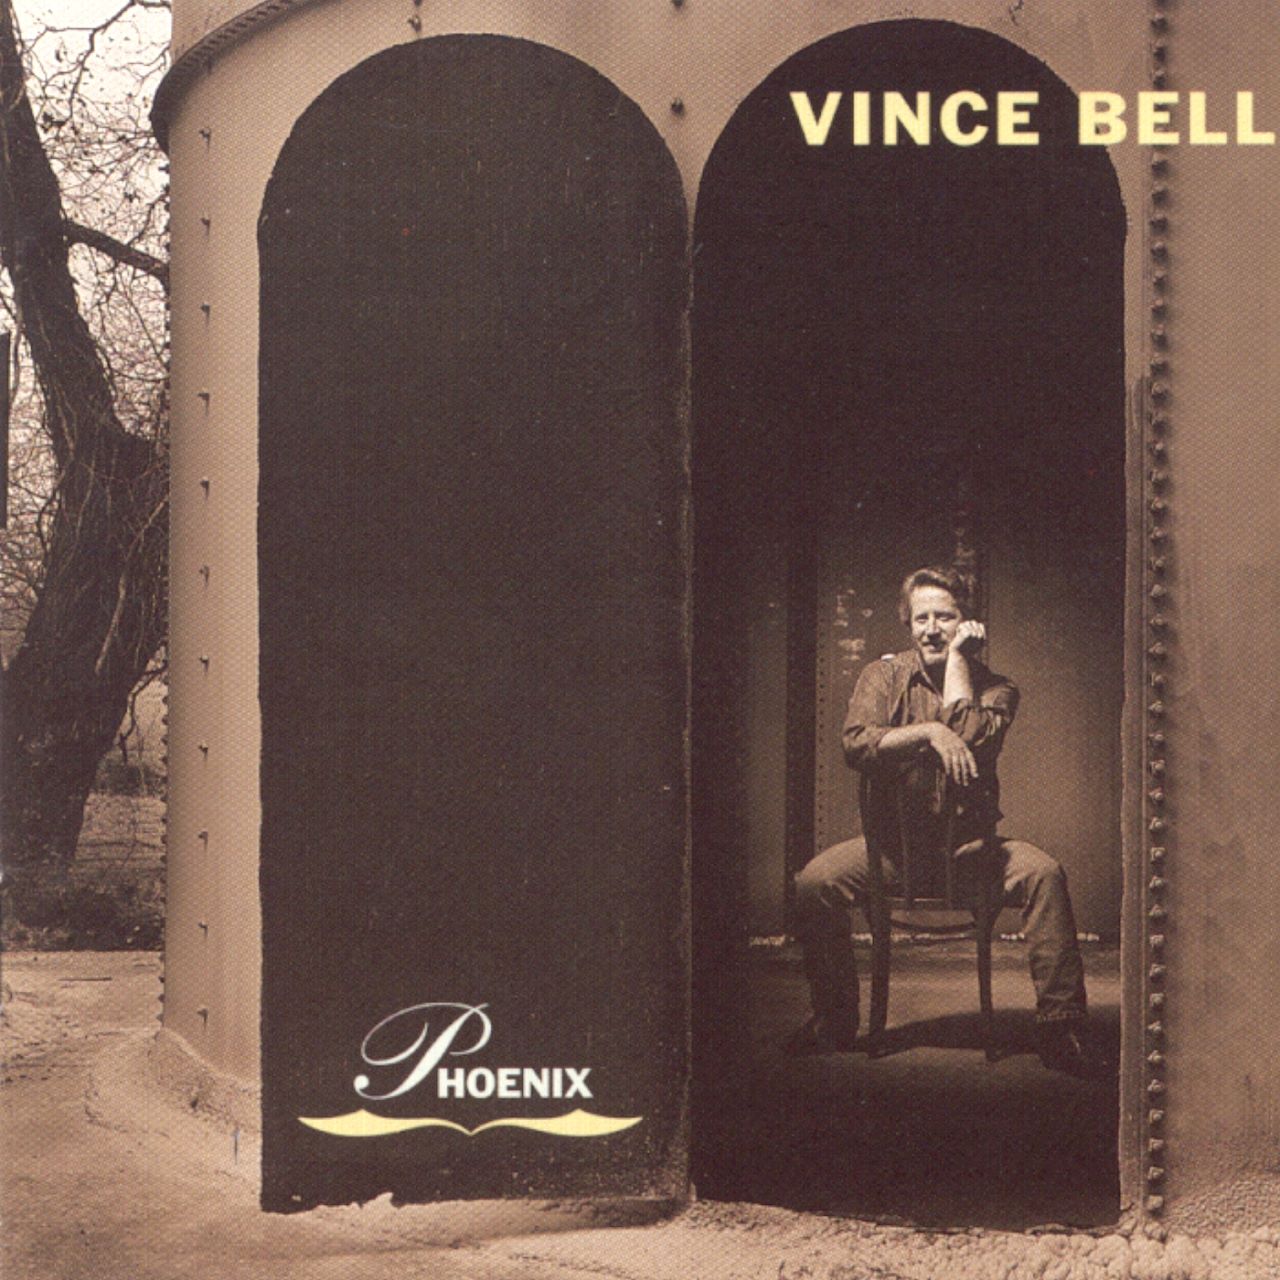 Vince Bell - Phoenix cover album